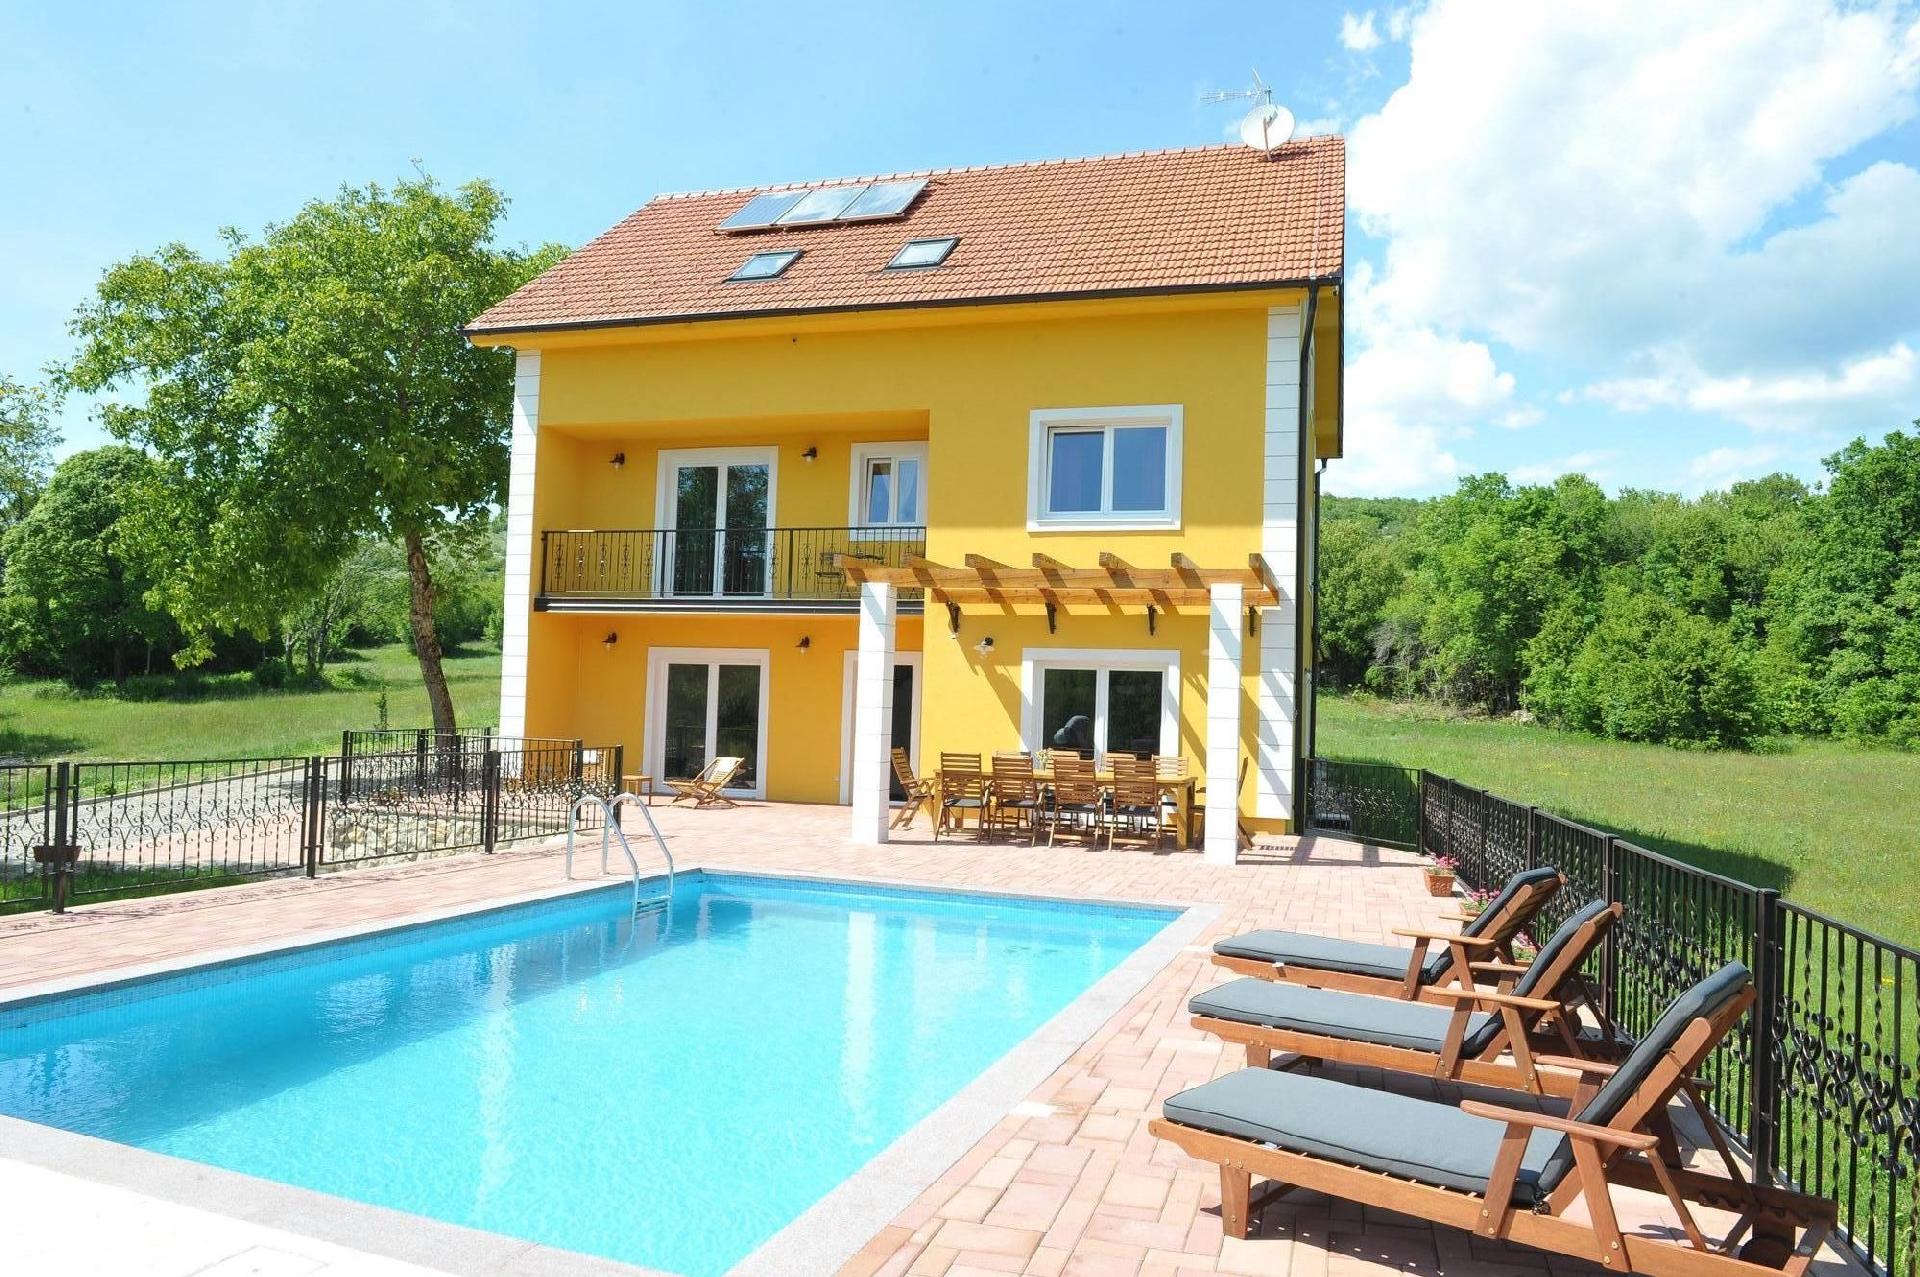 Alleinstehendes Ferienhaus mit Swimmingpool fü Ferienhaus in Kroatien